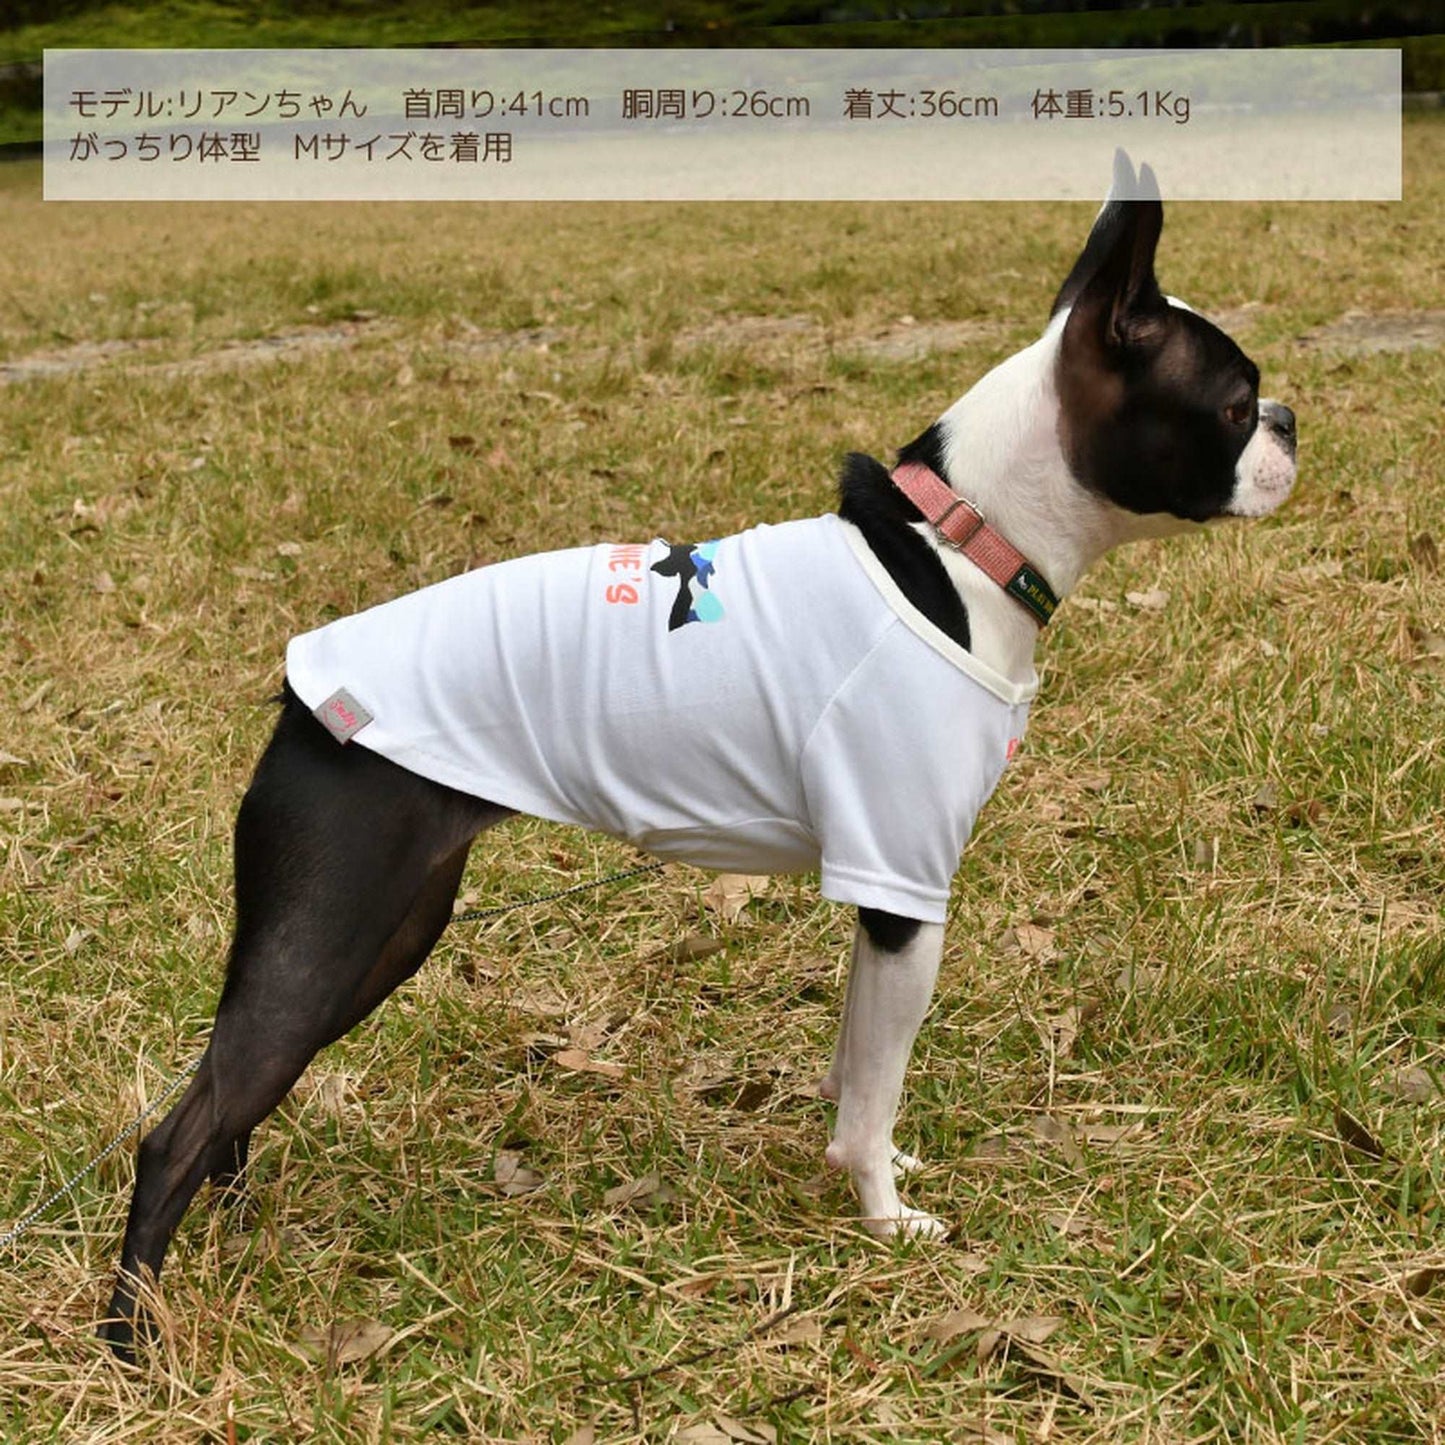 おさかなTシャツ 犬服 ドッグウェア S/M/L/XL/XXL ワンボヤージュ ブラウニーズ トイプードル チワワ ダックス br131541-1